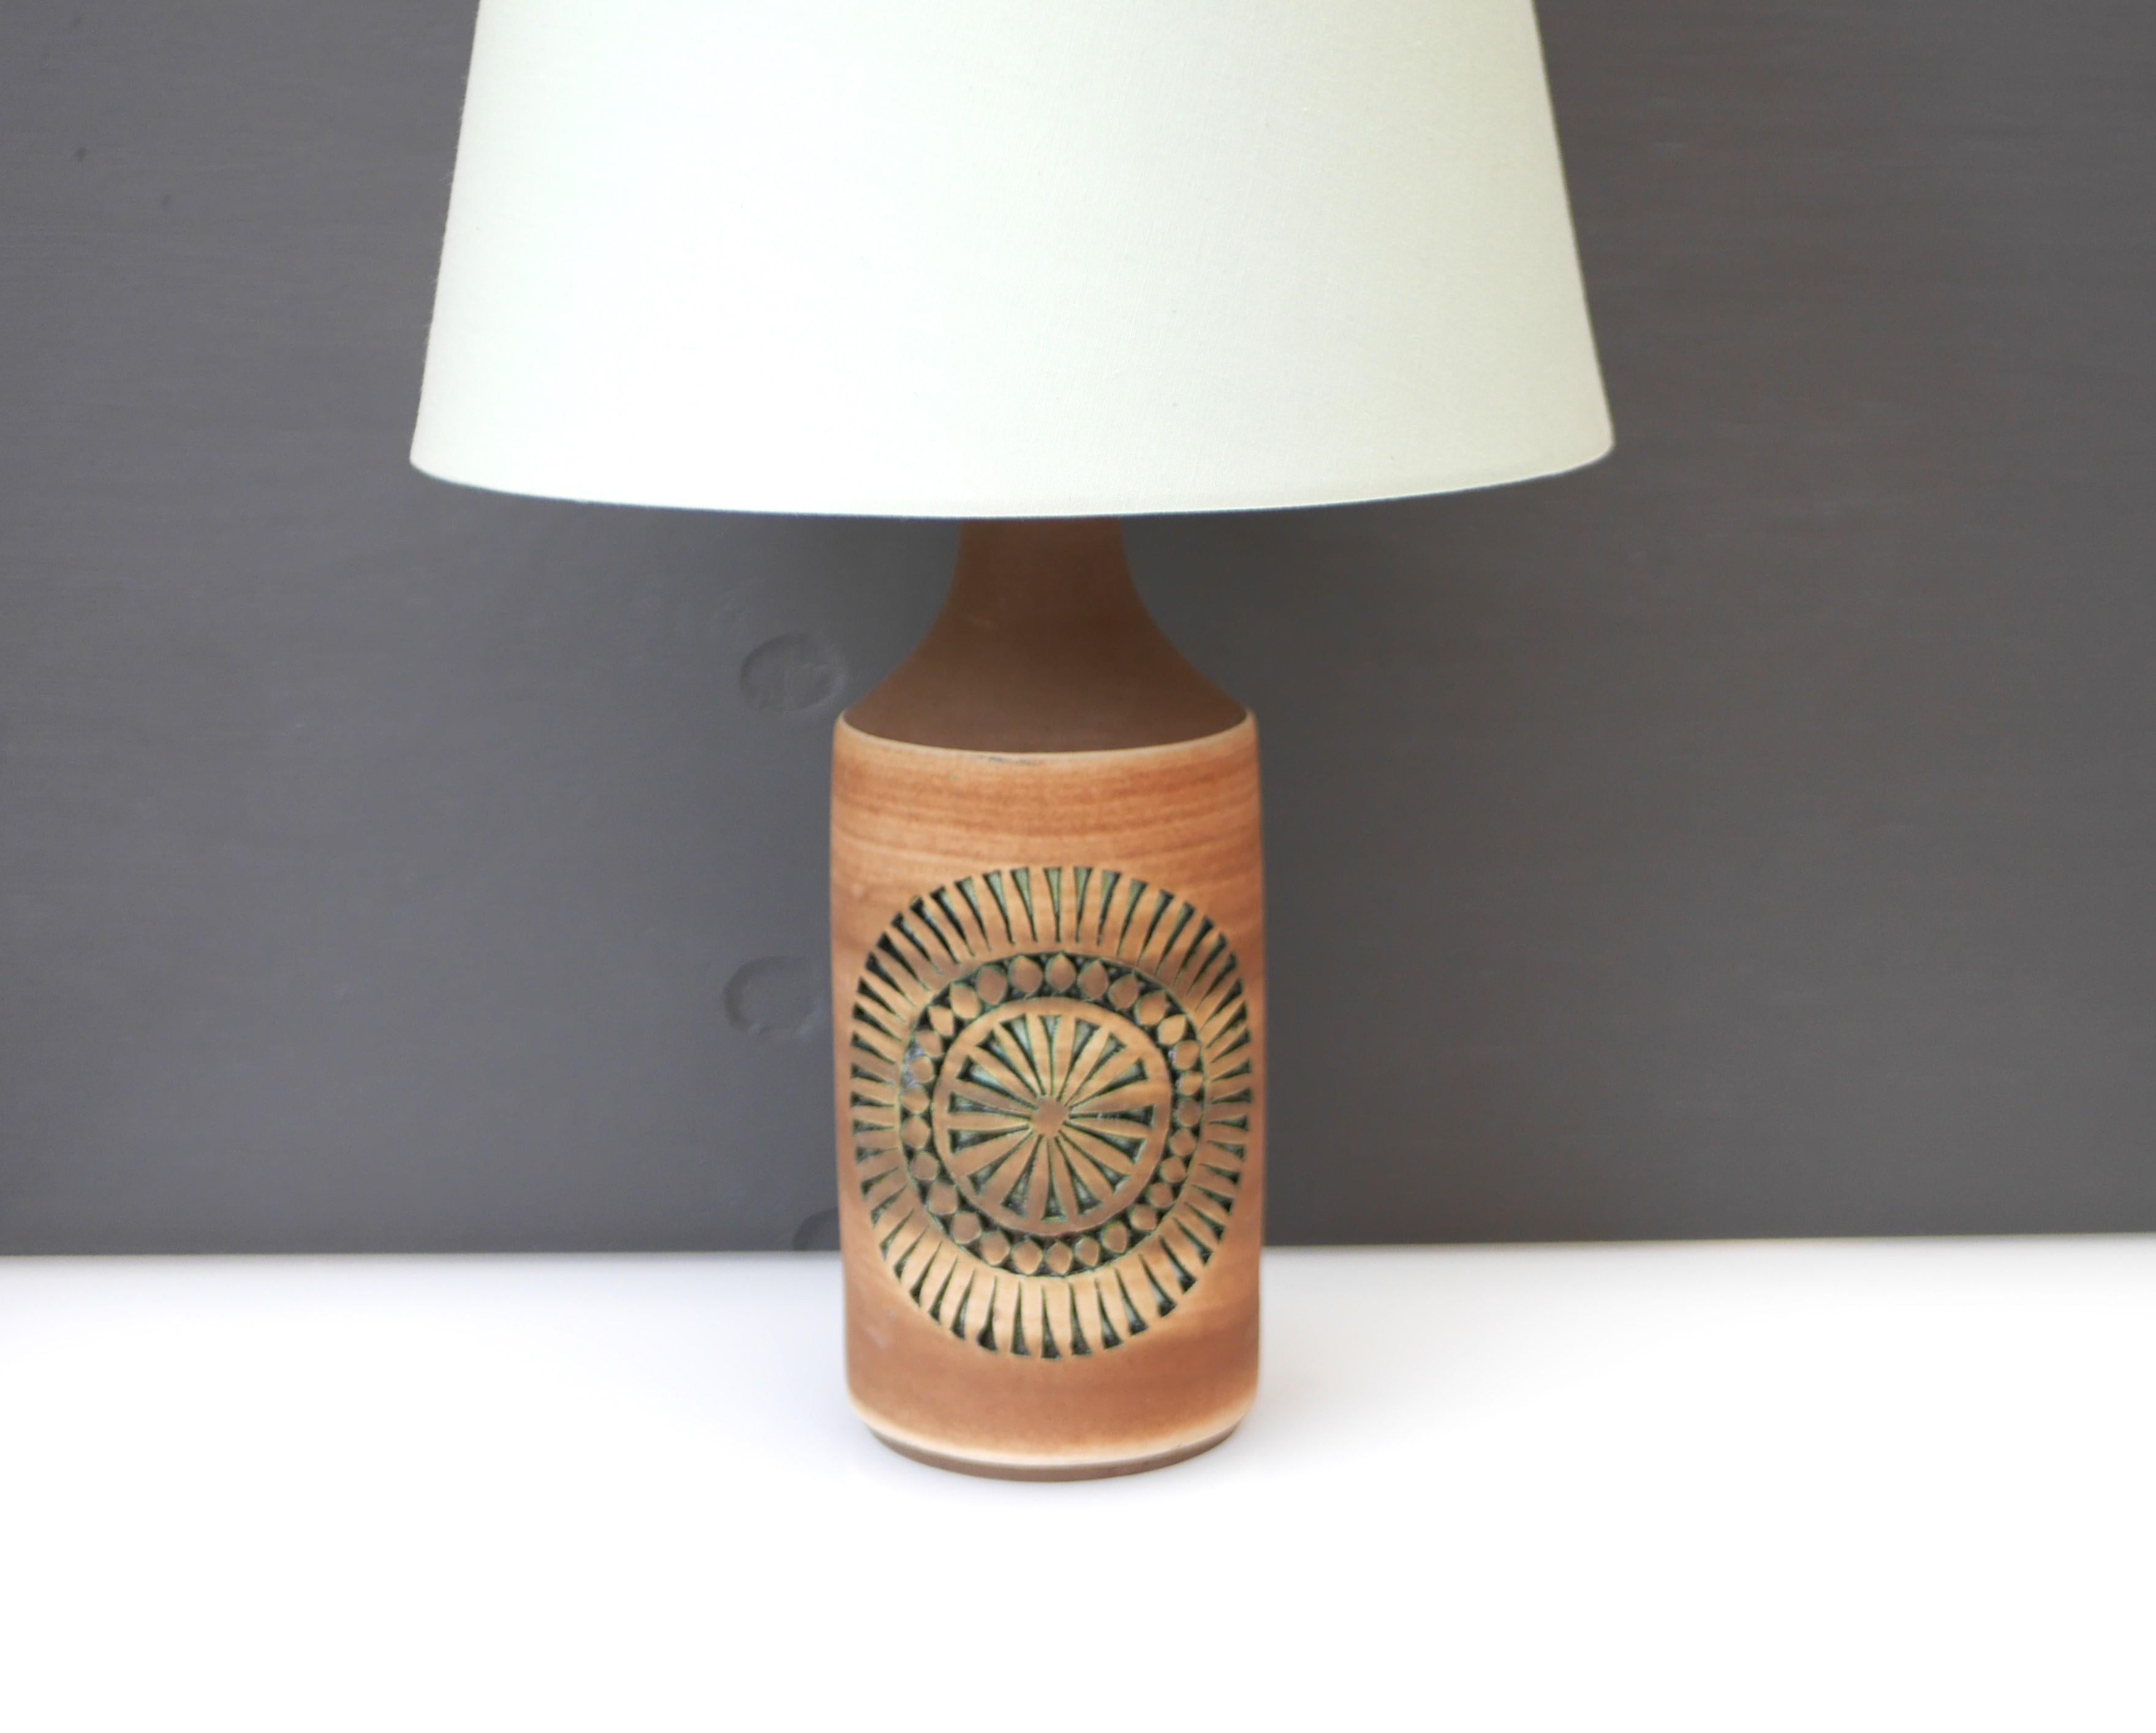 Un fantastique pied de lampe vintage en céramique de grande taille, fait à la main par Thomas Anagrius pour Alingsås Keramik, Suède. Cette base de lampe est simple dans sa conception, avec des motifs complexes incrustés et tout cela est fait à la